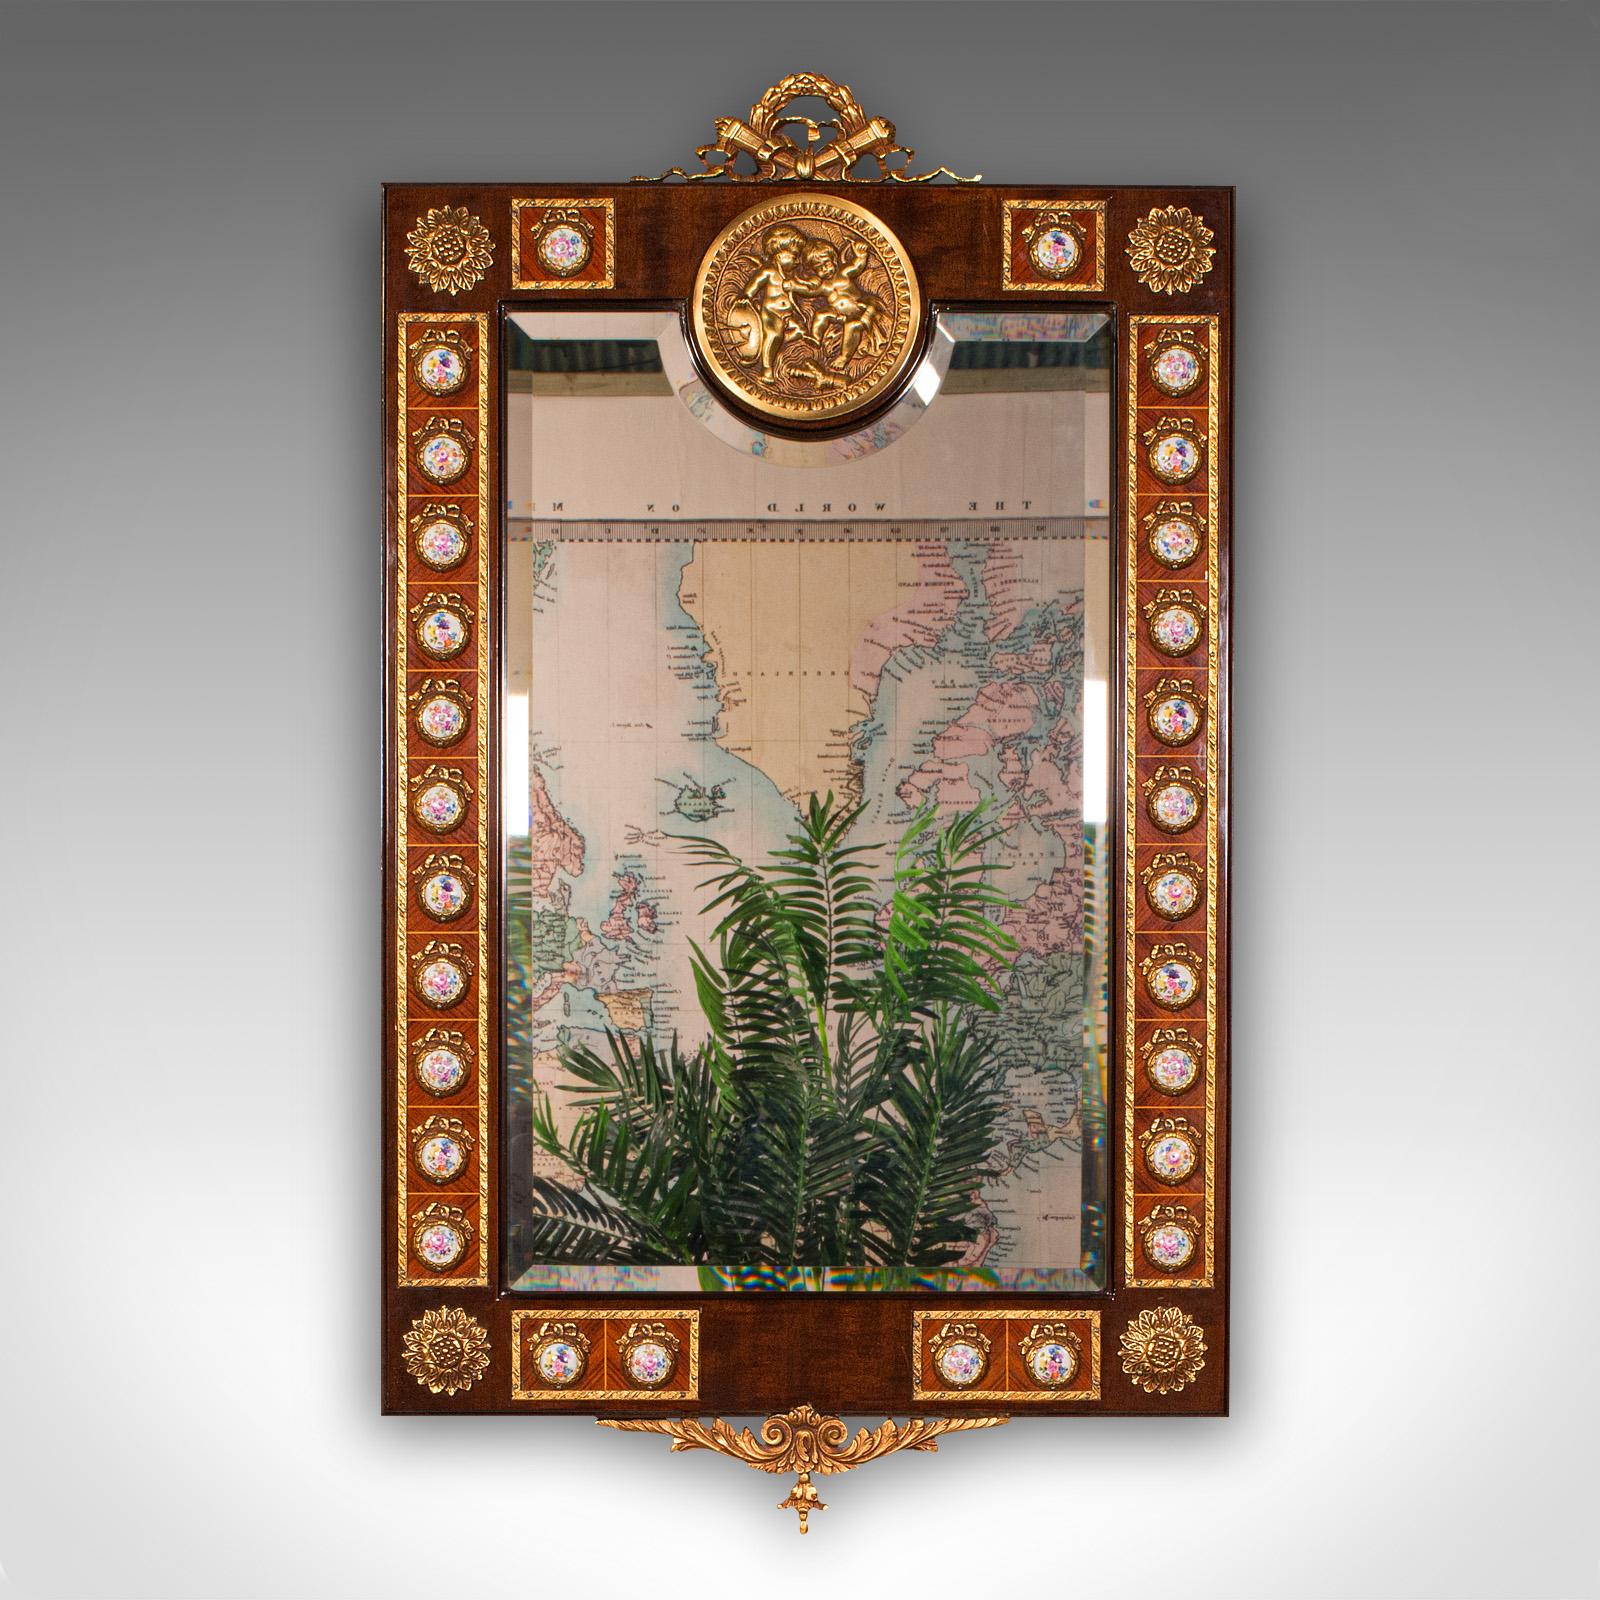 Dies ist ein großer Vintage-Übermantelspiegel. Ein kontinentaler, dekorativer Spiegel aus Nussbaumholz im italienischen Stil, aus dem späten 20. Jahrhundert, um 1970.

Auffallend verziert, mit hervorragender Handwerkskunst und sehr ausgeprägt
Mit